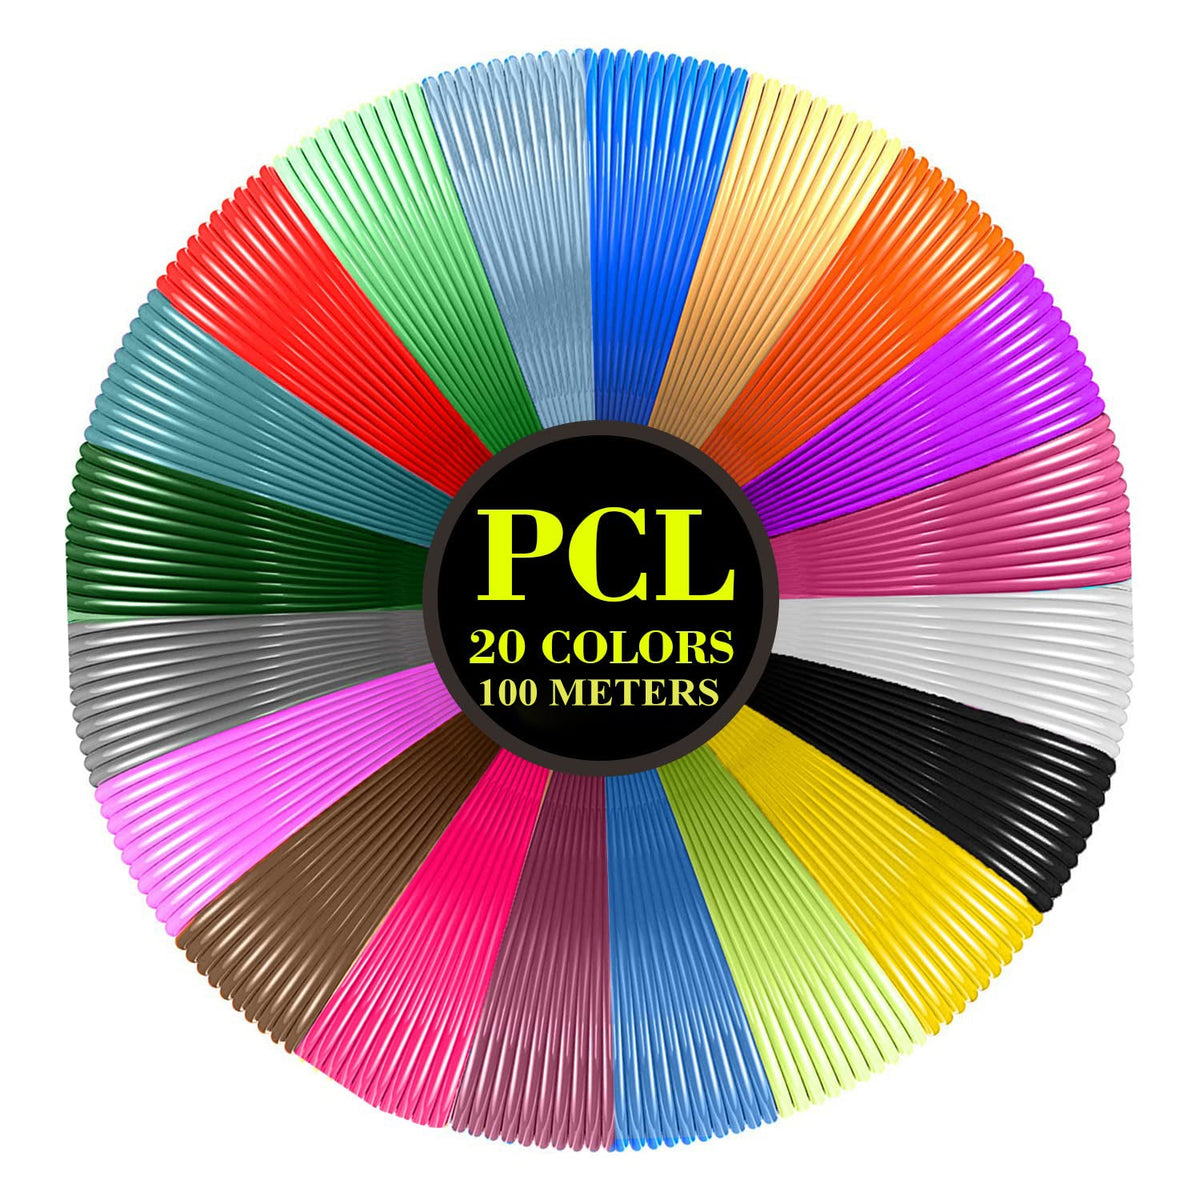 3D Printing Pen PCL Filament Refills 20 Colors